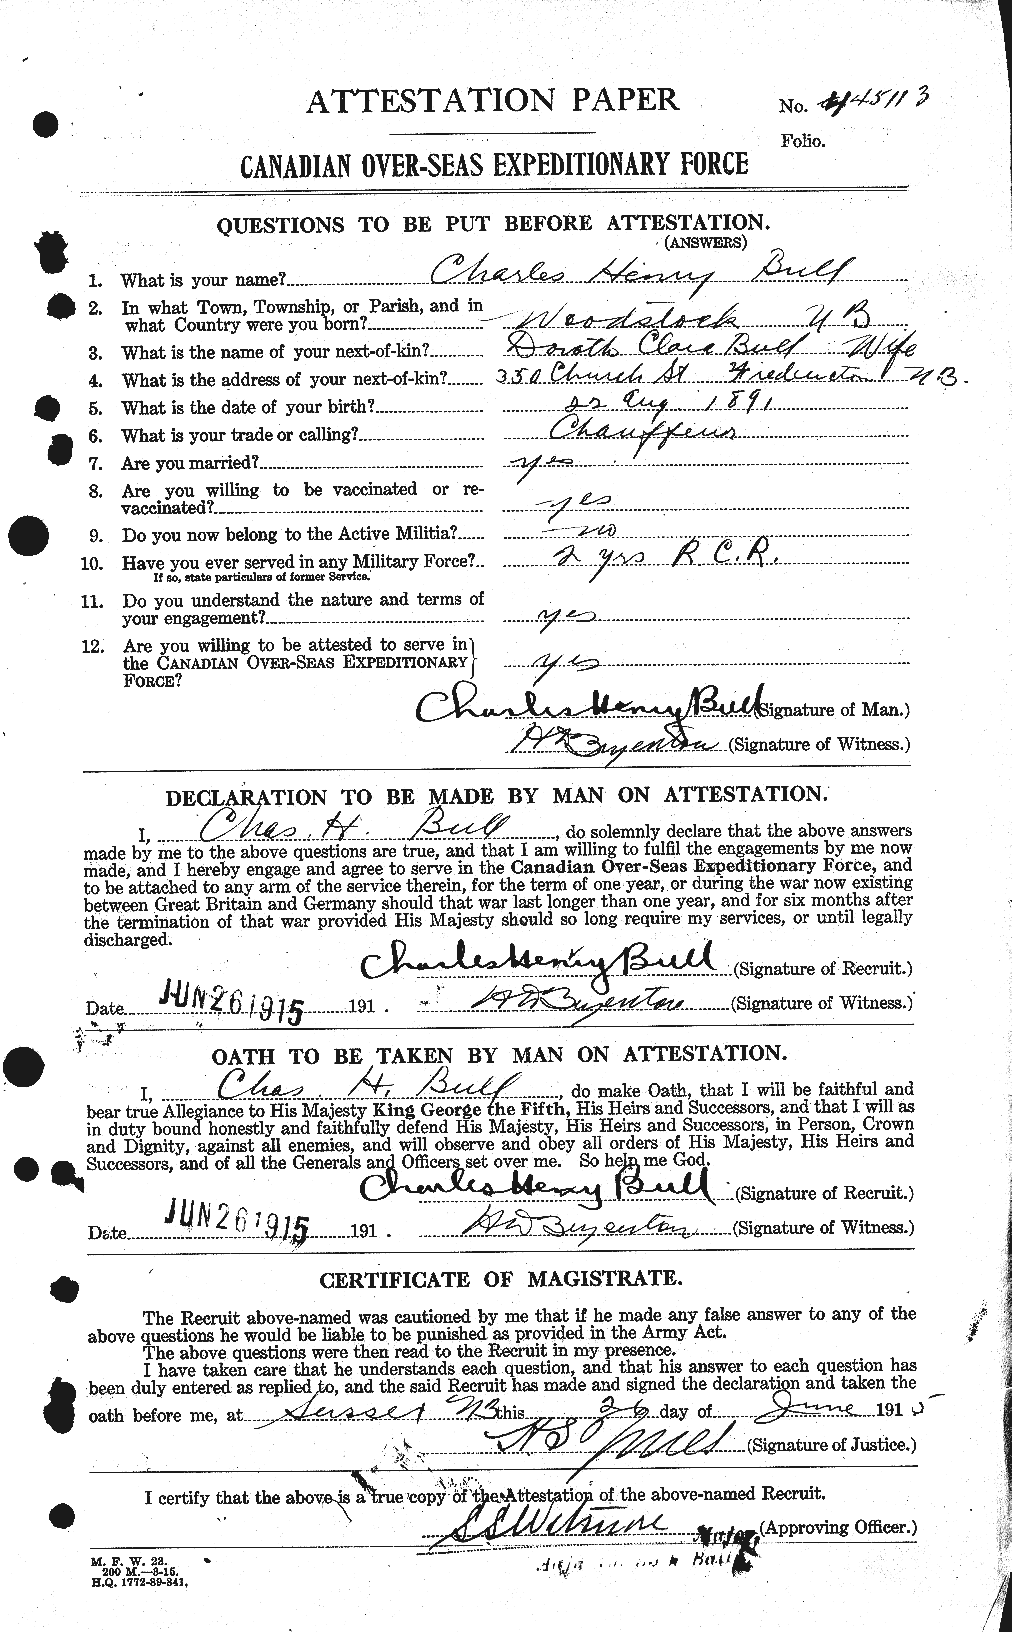 Dossiers du Personnel de la Première Guerre mondiale - CEC 273371a